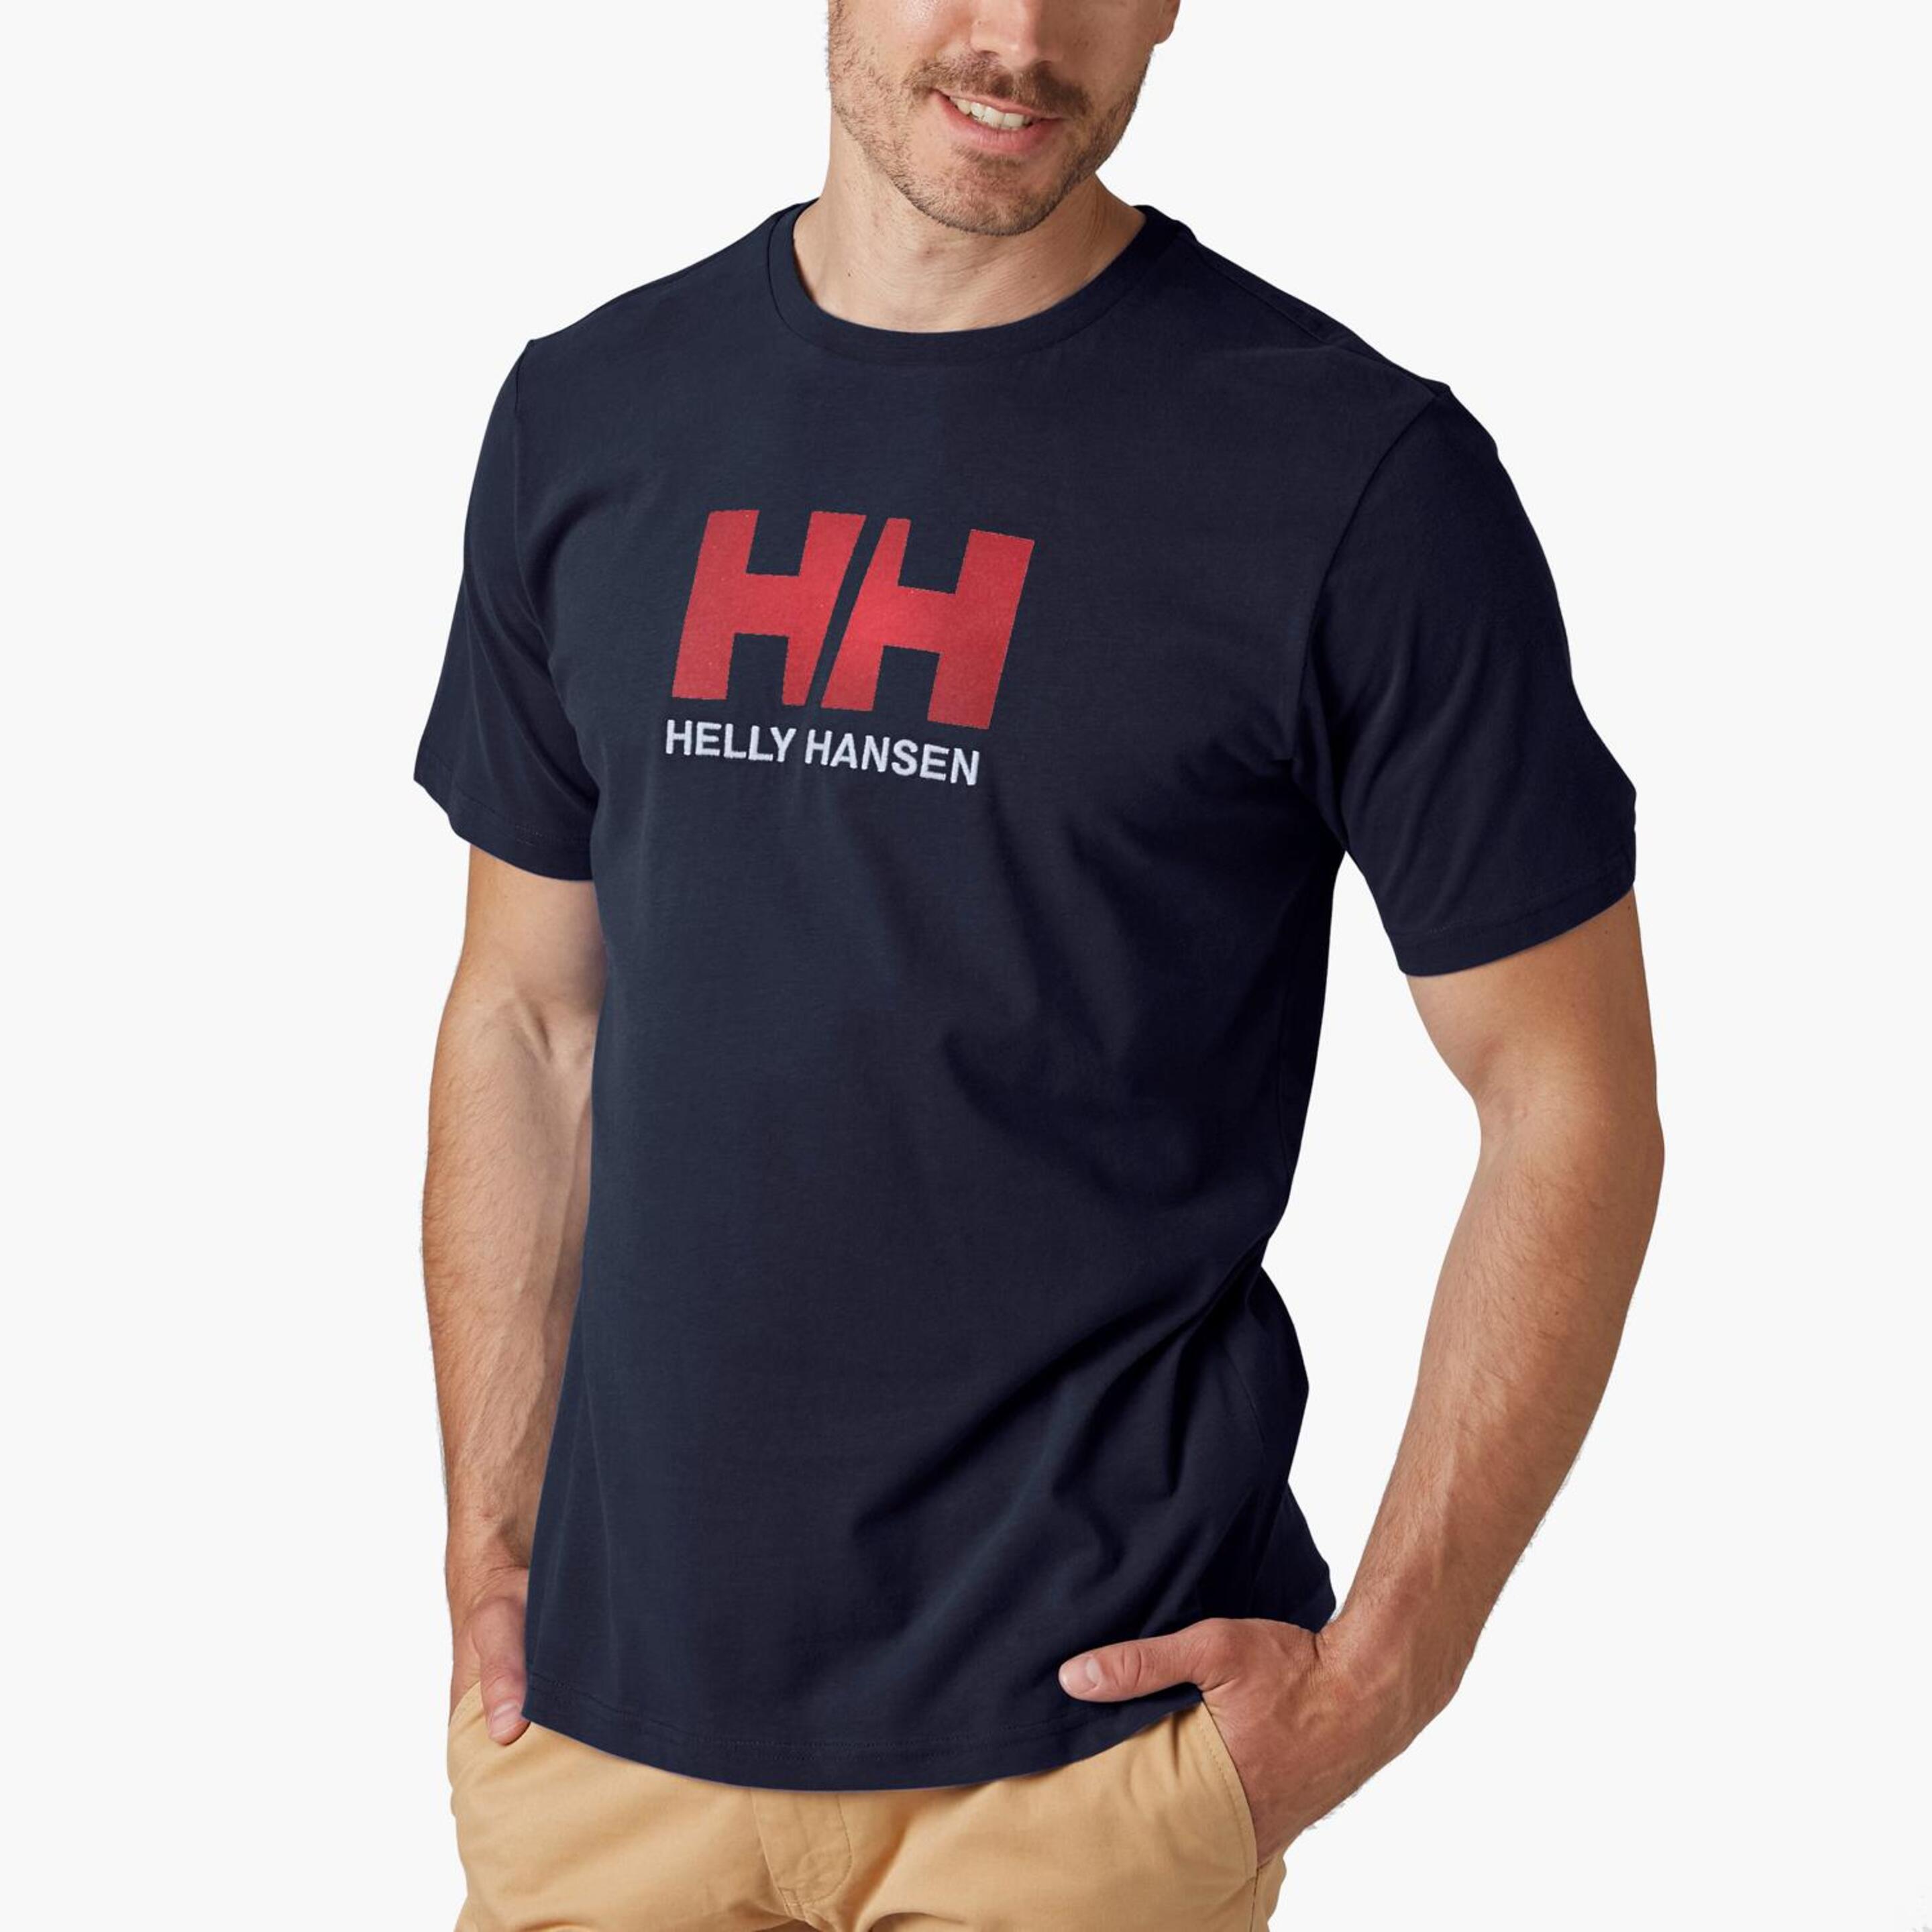 Helly Hansen HO - Marino - Camiseta Montaña Hombre